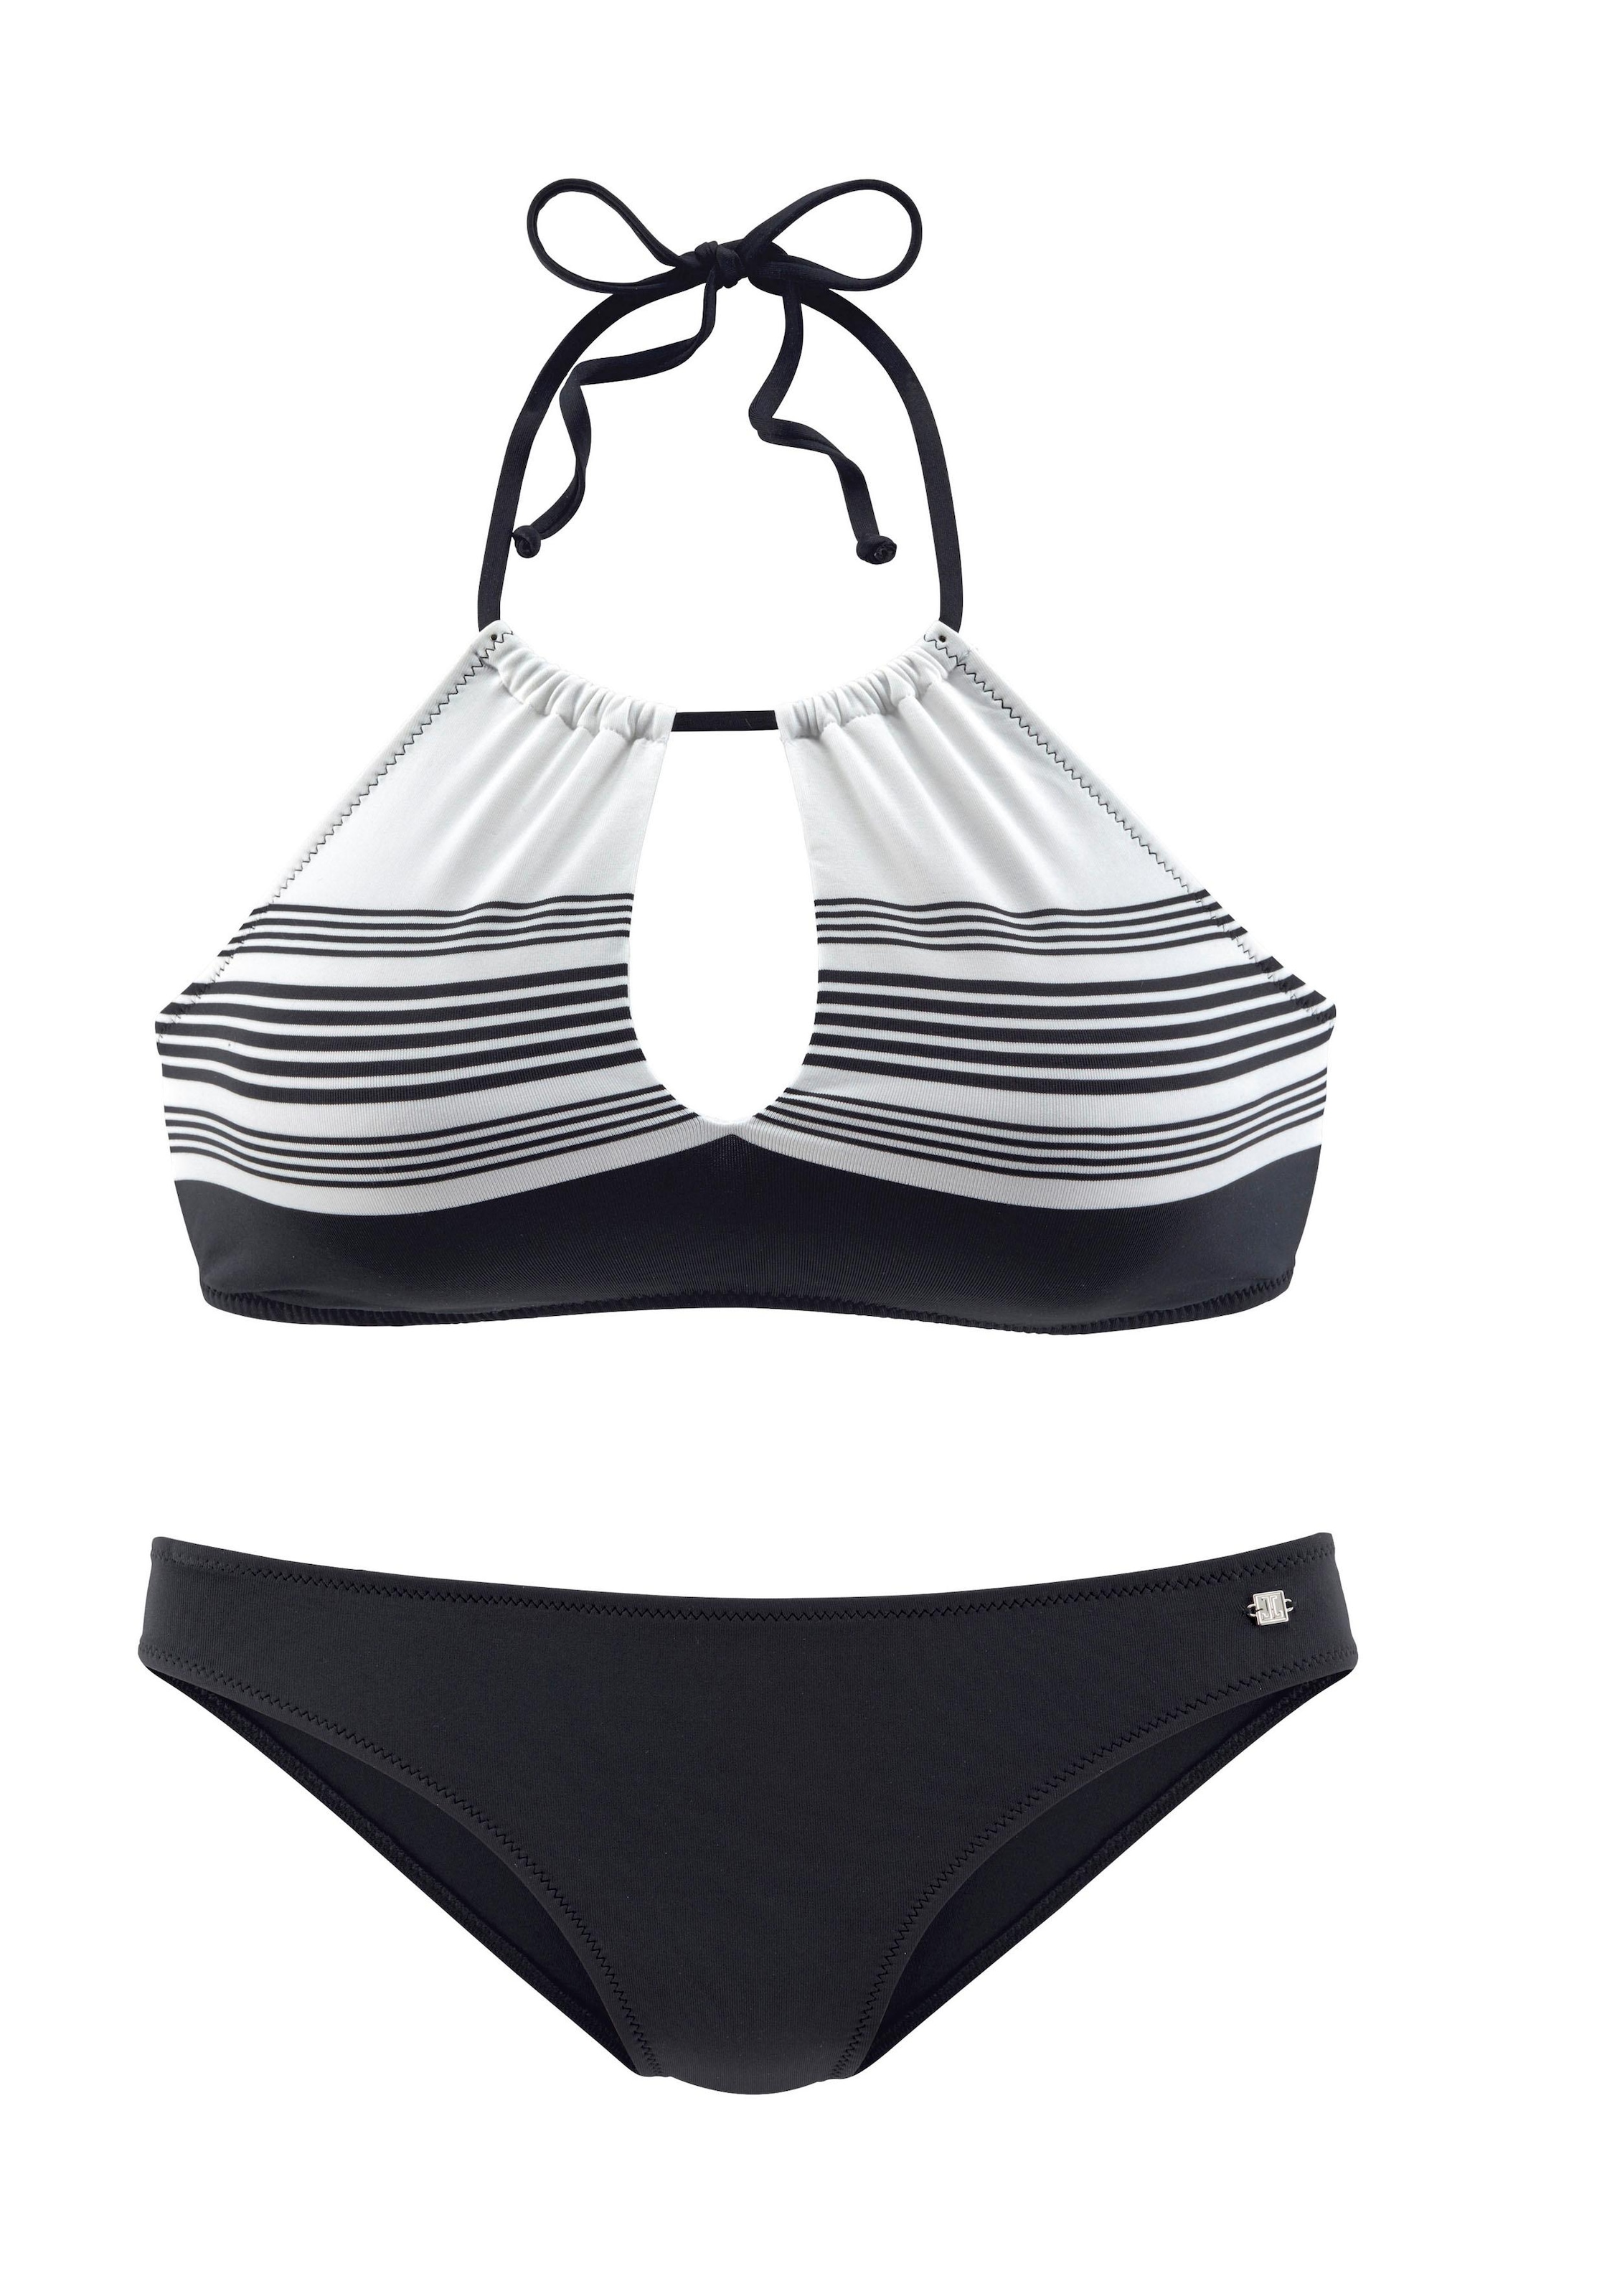 JETTE Bustier-Bikini, » Unterwäsche Lingerie LASCANA Bademode, mit Design online | hochwertigem kaufen 